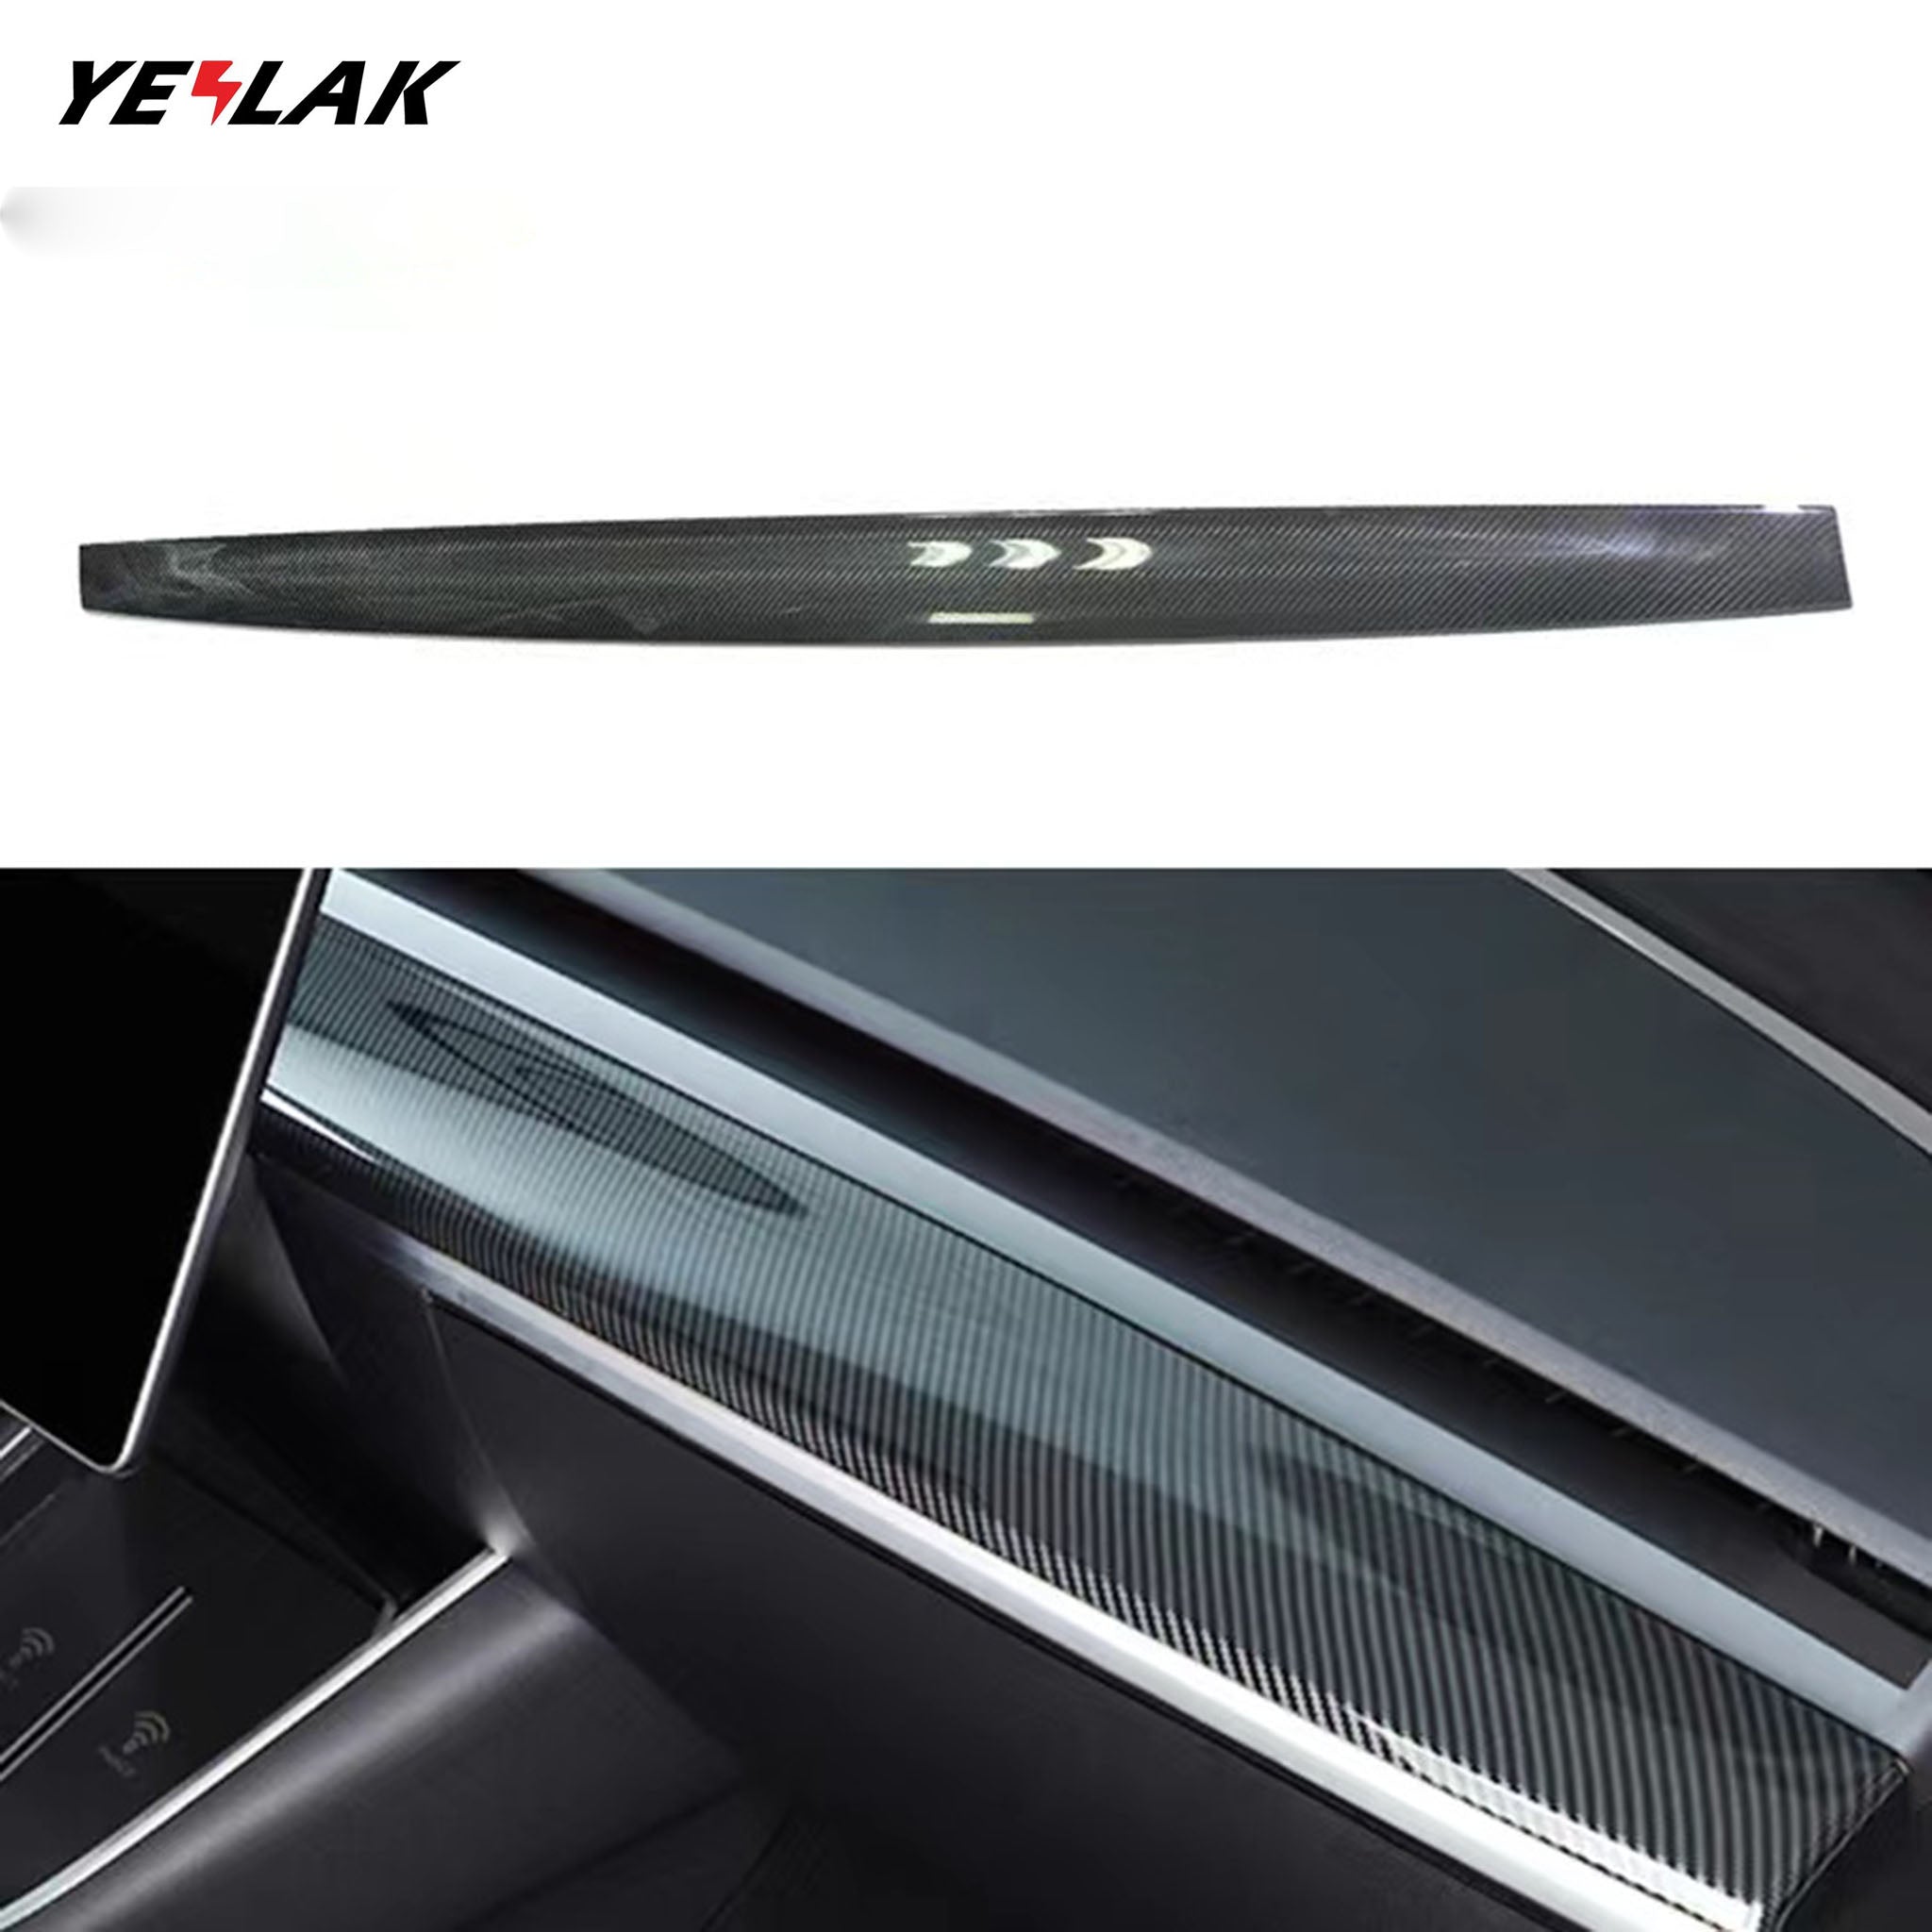 Bester Armlehnenbox-Ersatz für Tesla Model 3 / Y – Yeslak